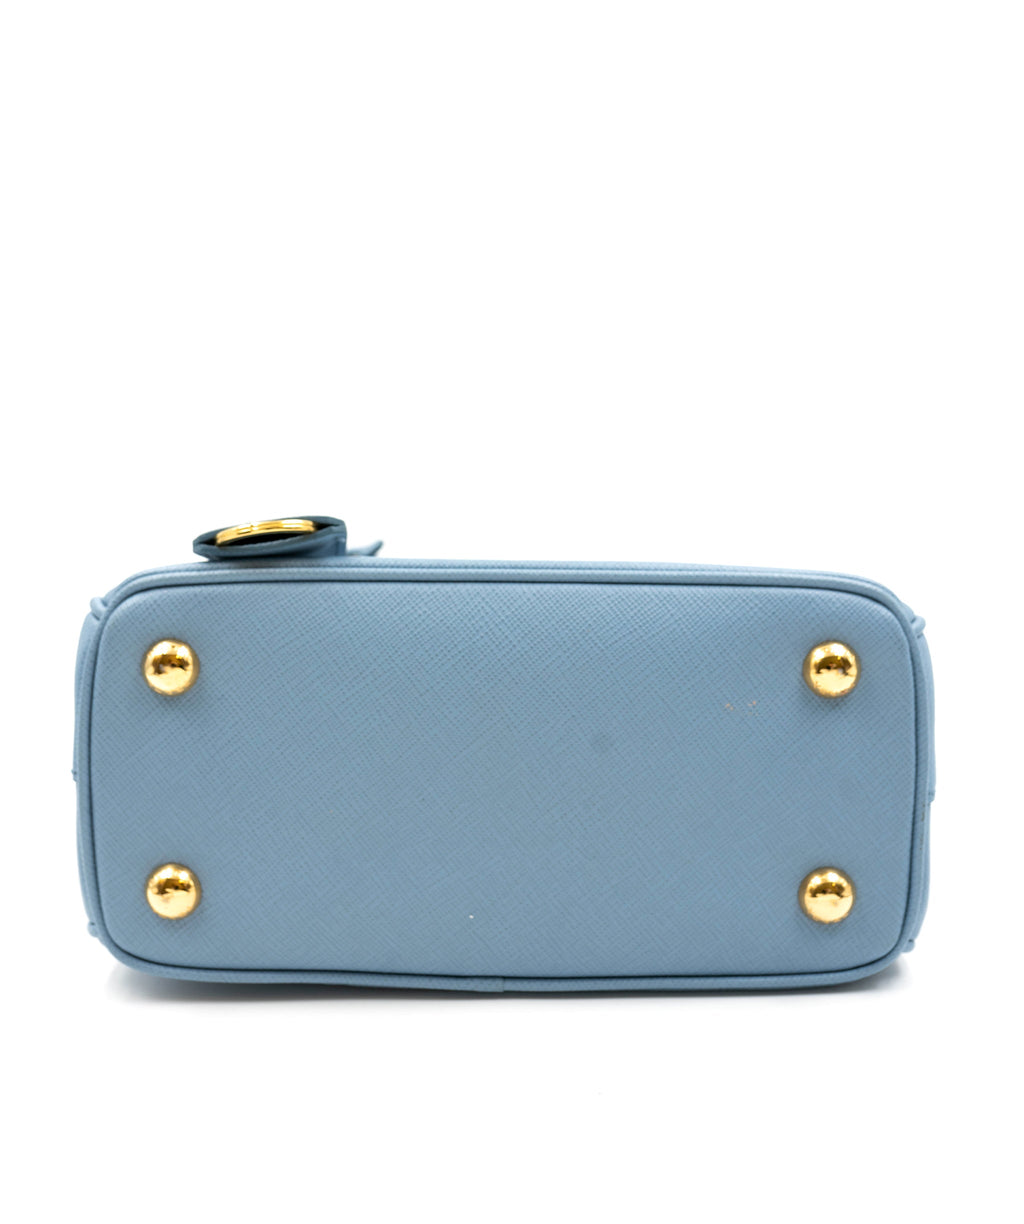 Prada - The Prada Galleria Bag in cobalt blue. Discover